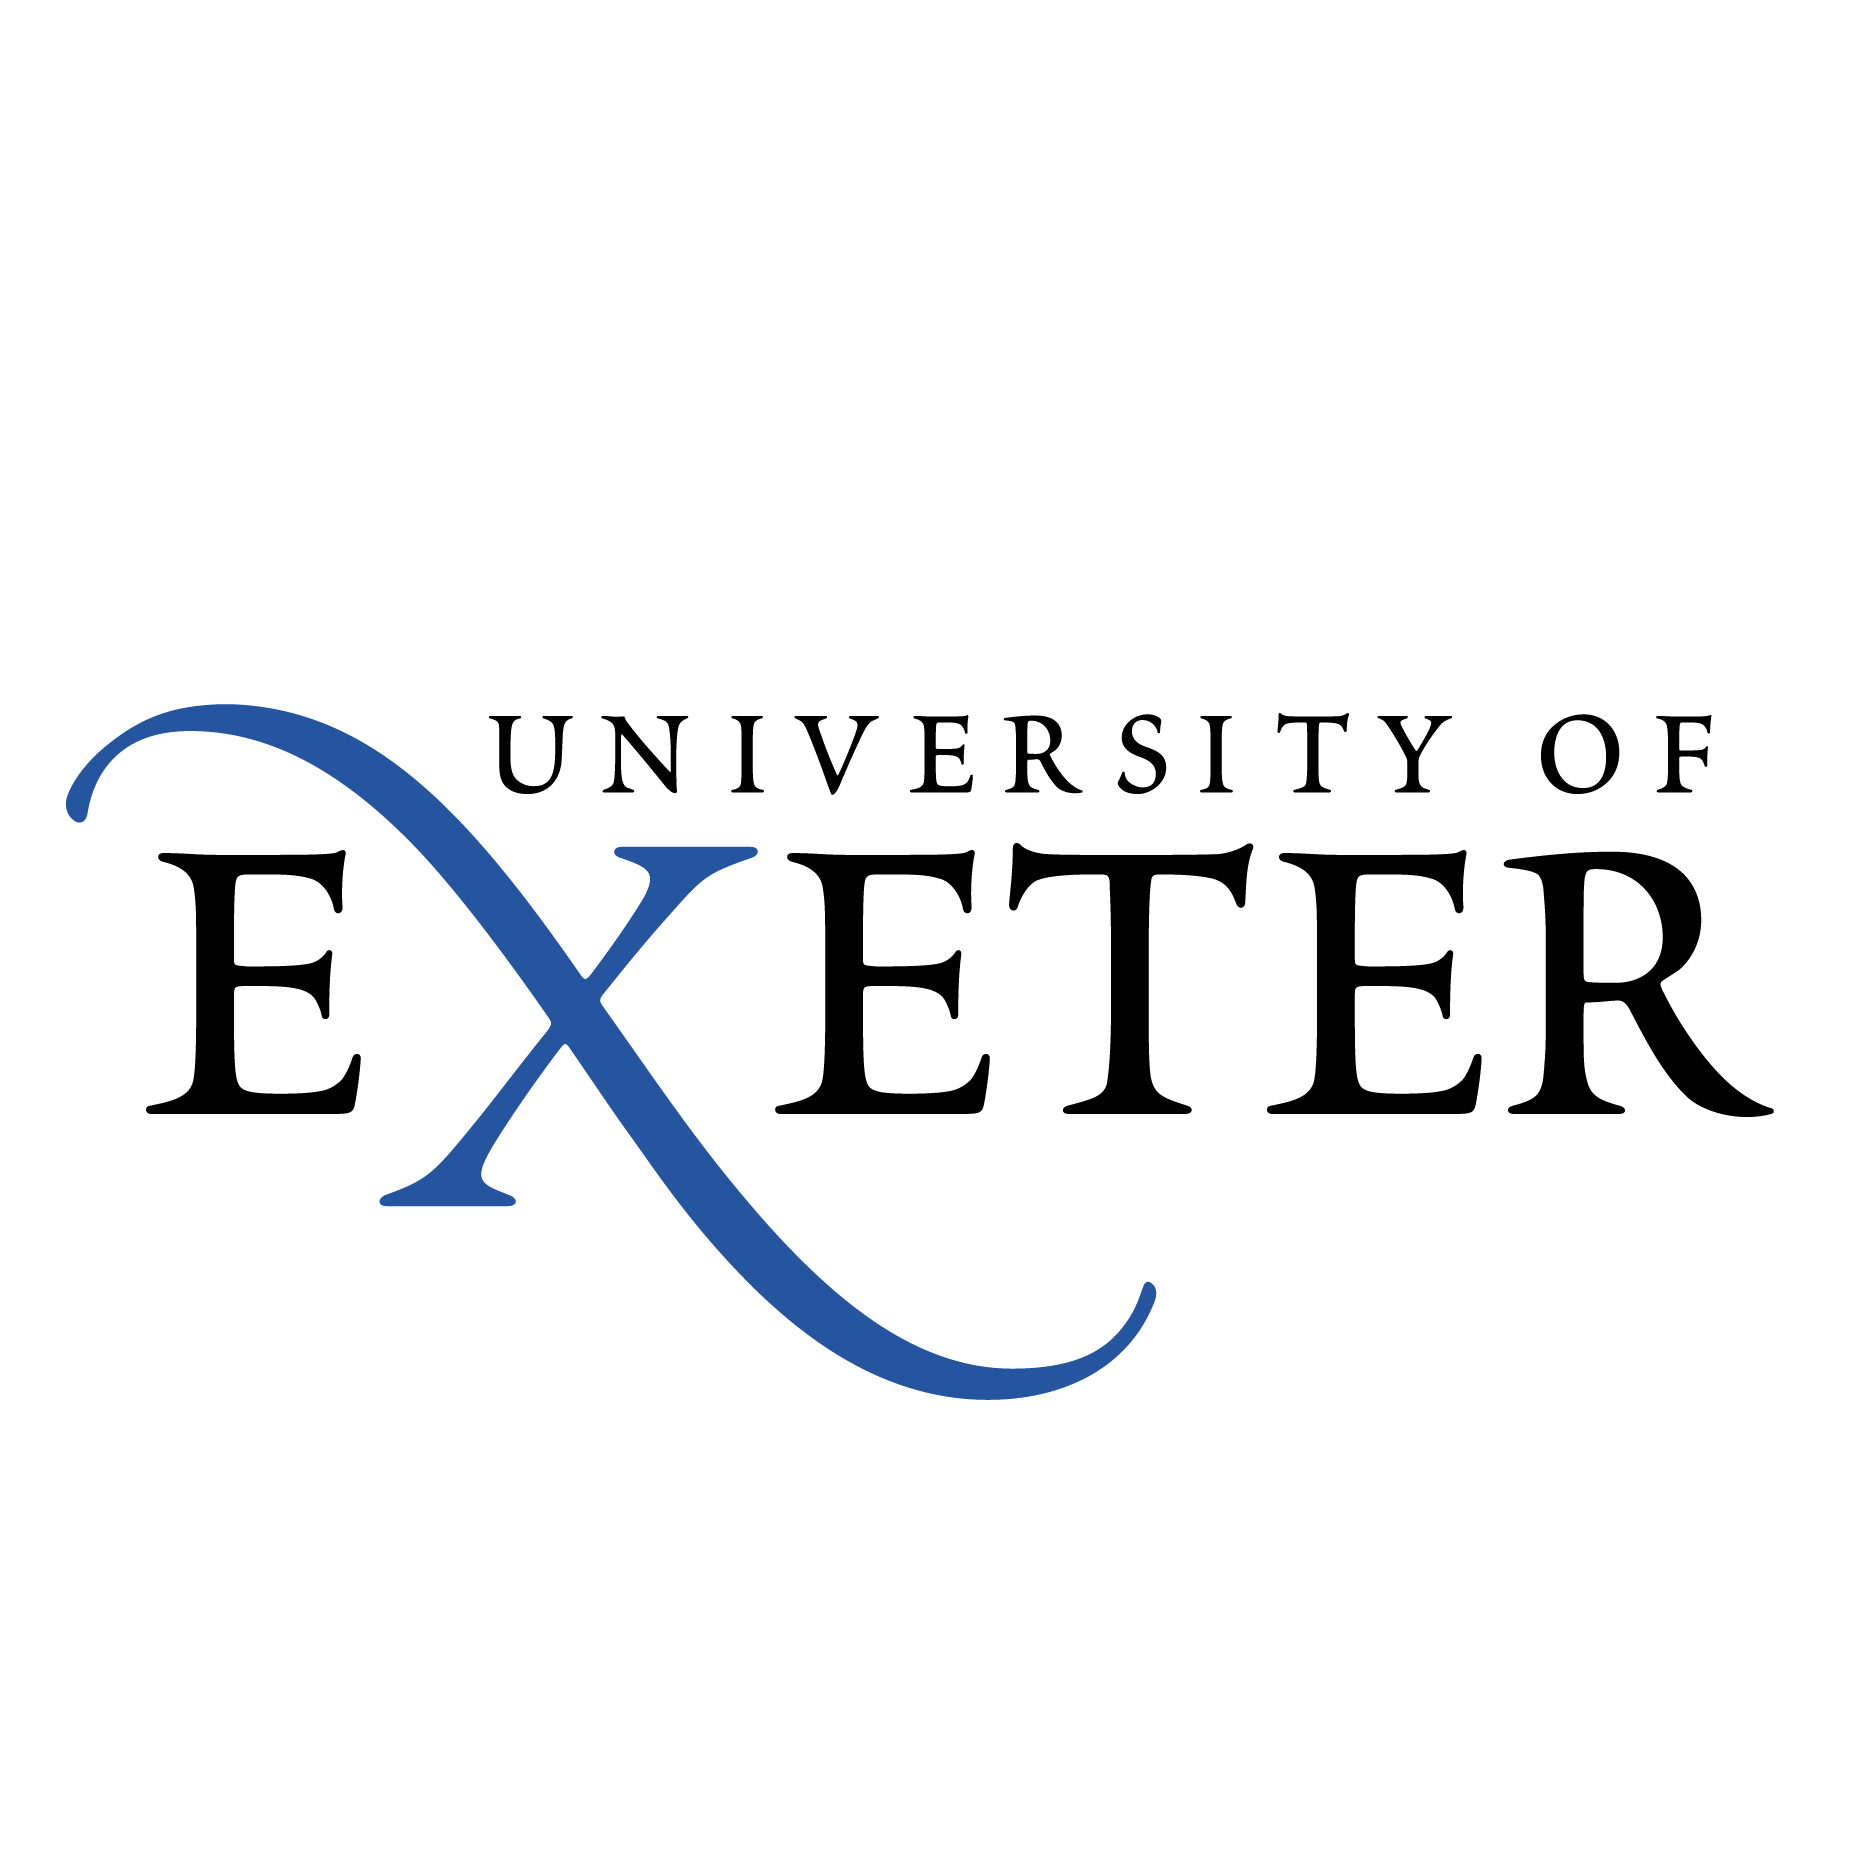 Exeter Logo - University of Exeter logo - Flock – The Marketing Transformation Company